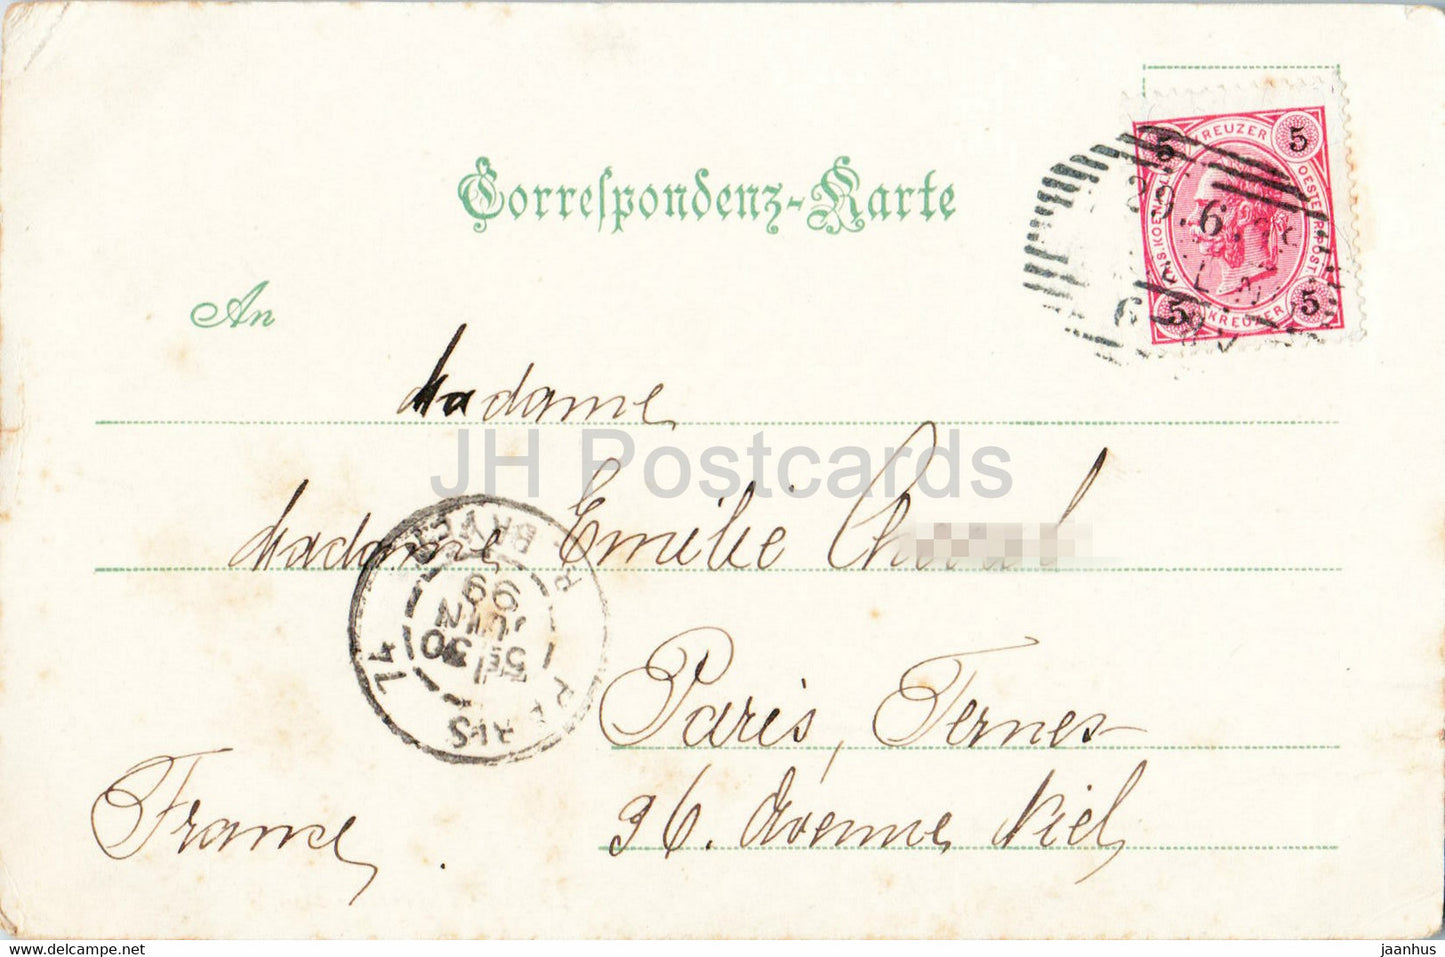 Gruss aus Wien - Maria Theresia Denkmal - alte Postkarte - 1899 - Österreich - gebraucht